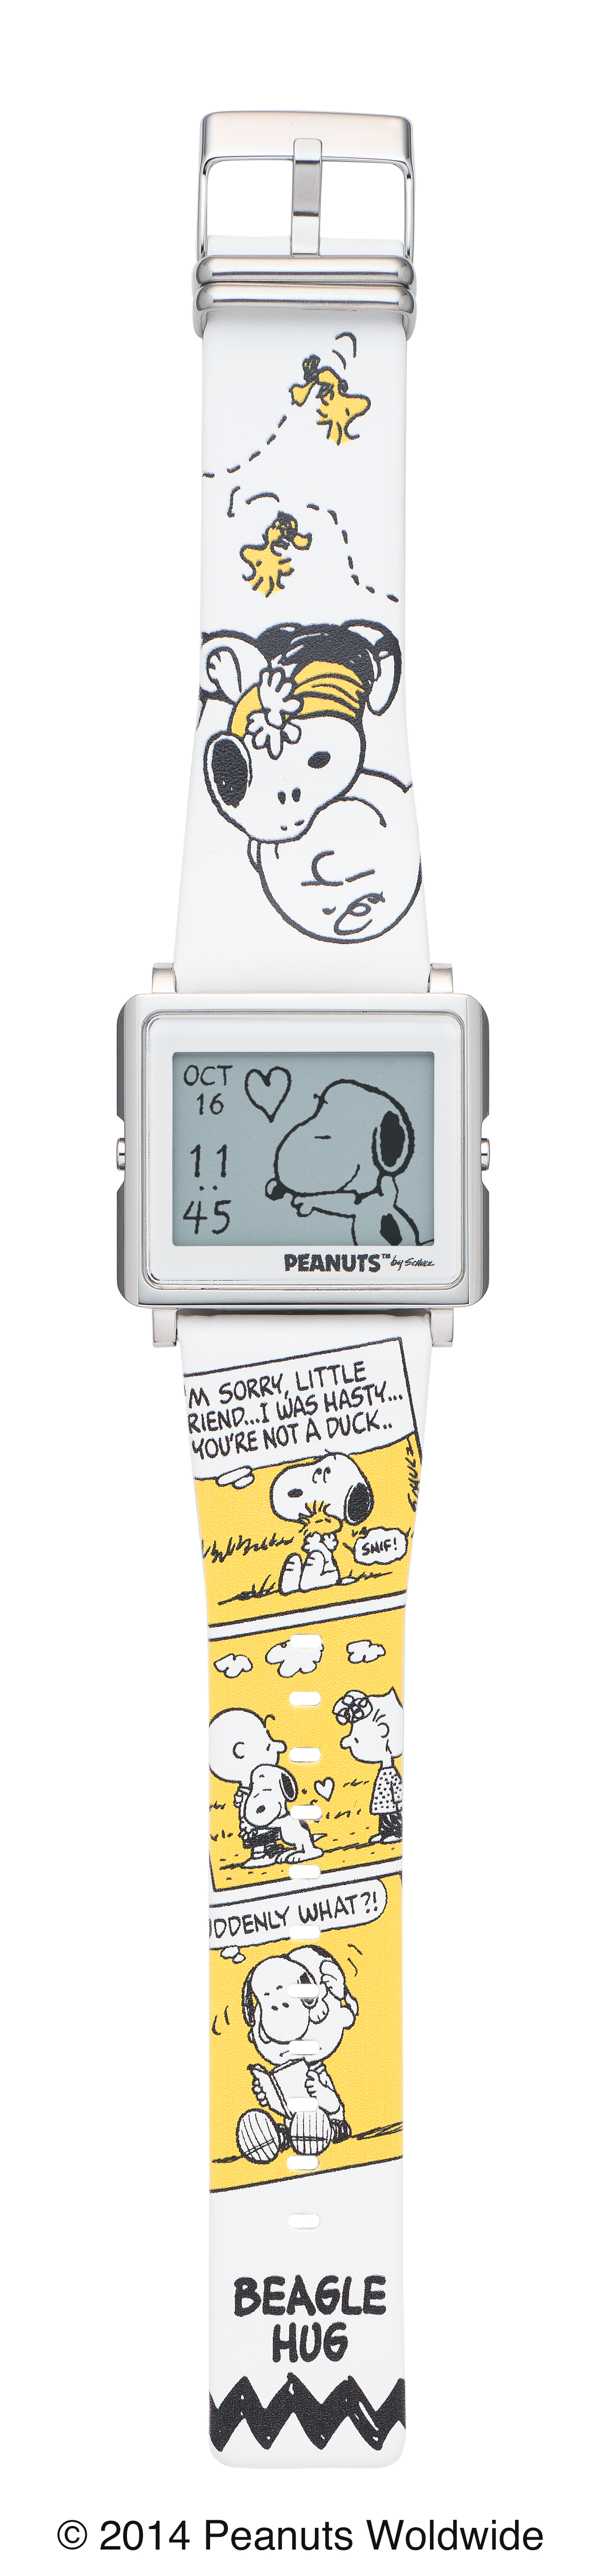 スヌーピーが描かれる Peanuts 欧文フォントをデザインした Monotype など Smart Canvas 新シリーズ登場 エプソン販売株式会社 セイコーエプソン株式会社のプレスリリース